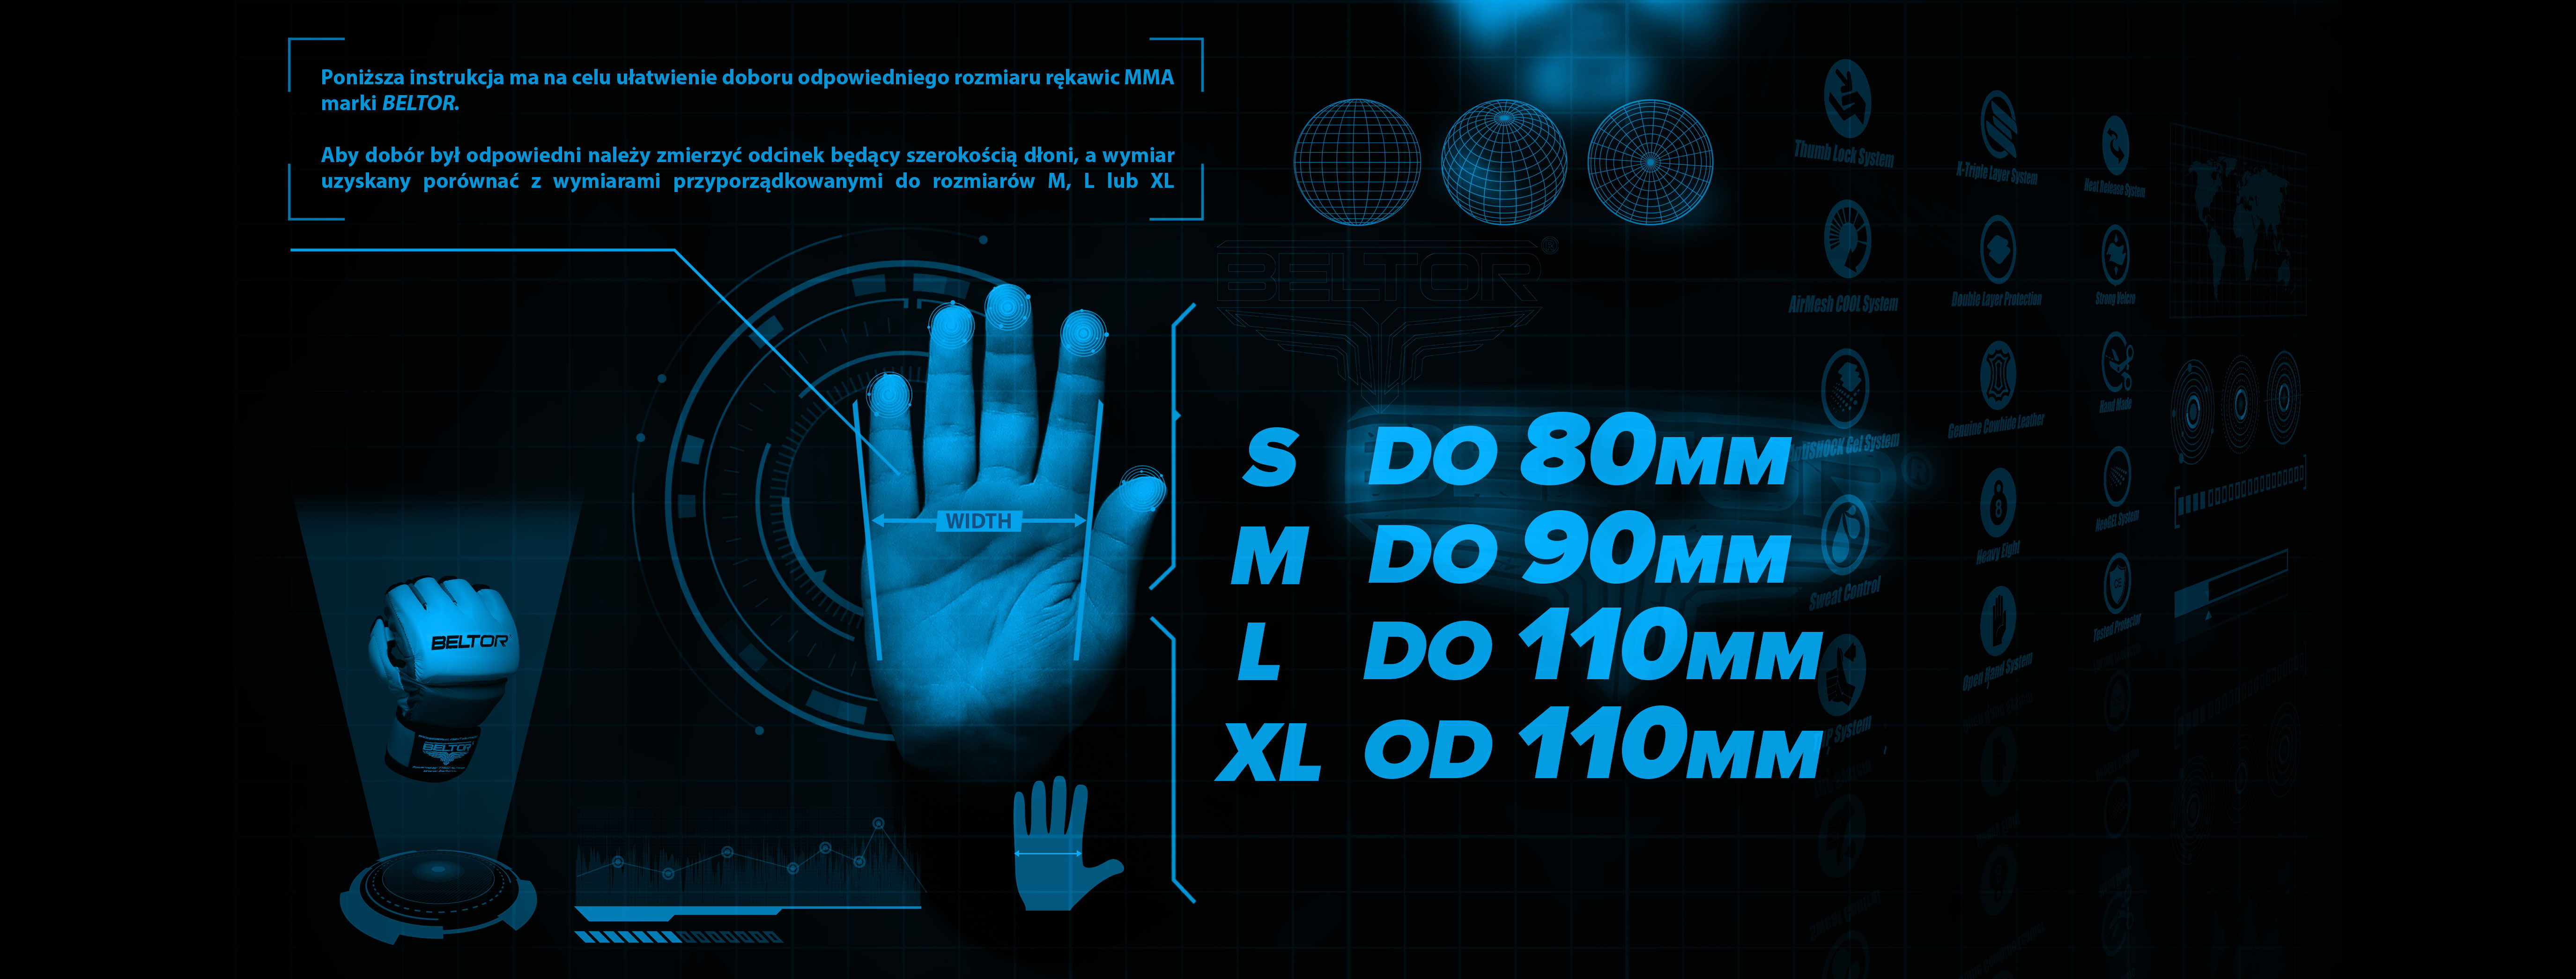 tabela rozmiarów rękawic mma